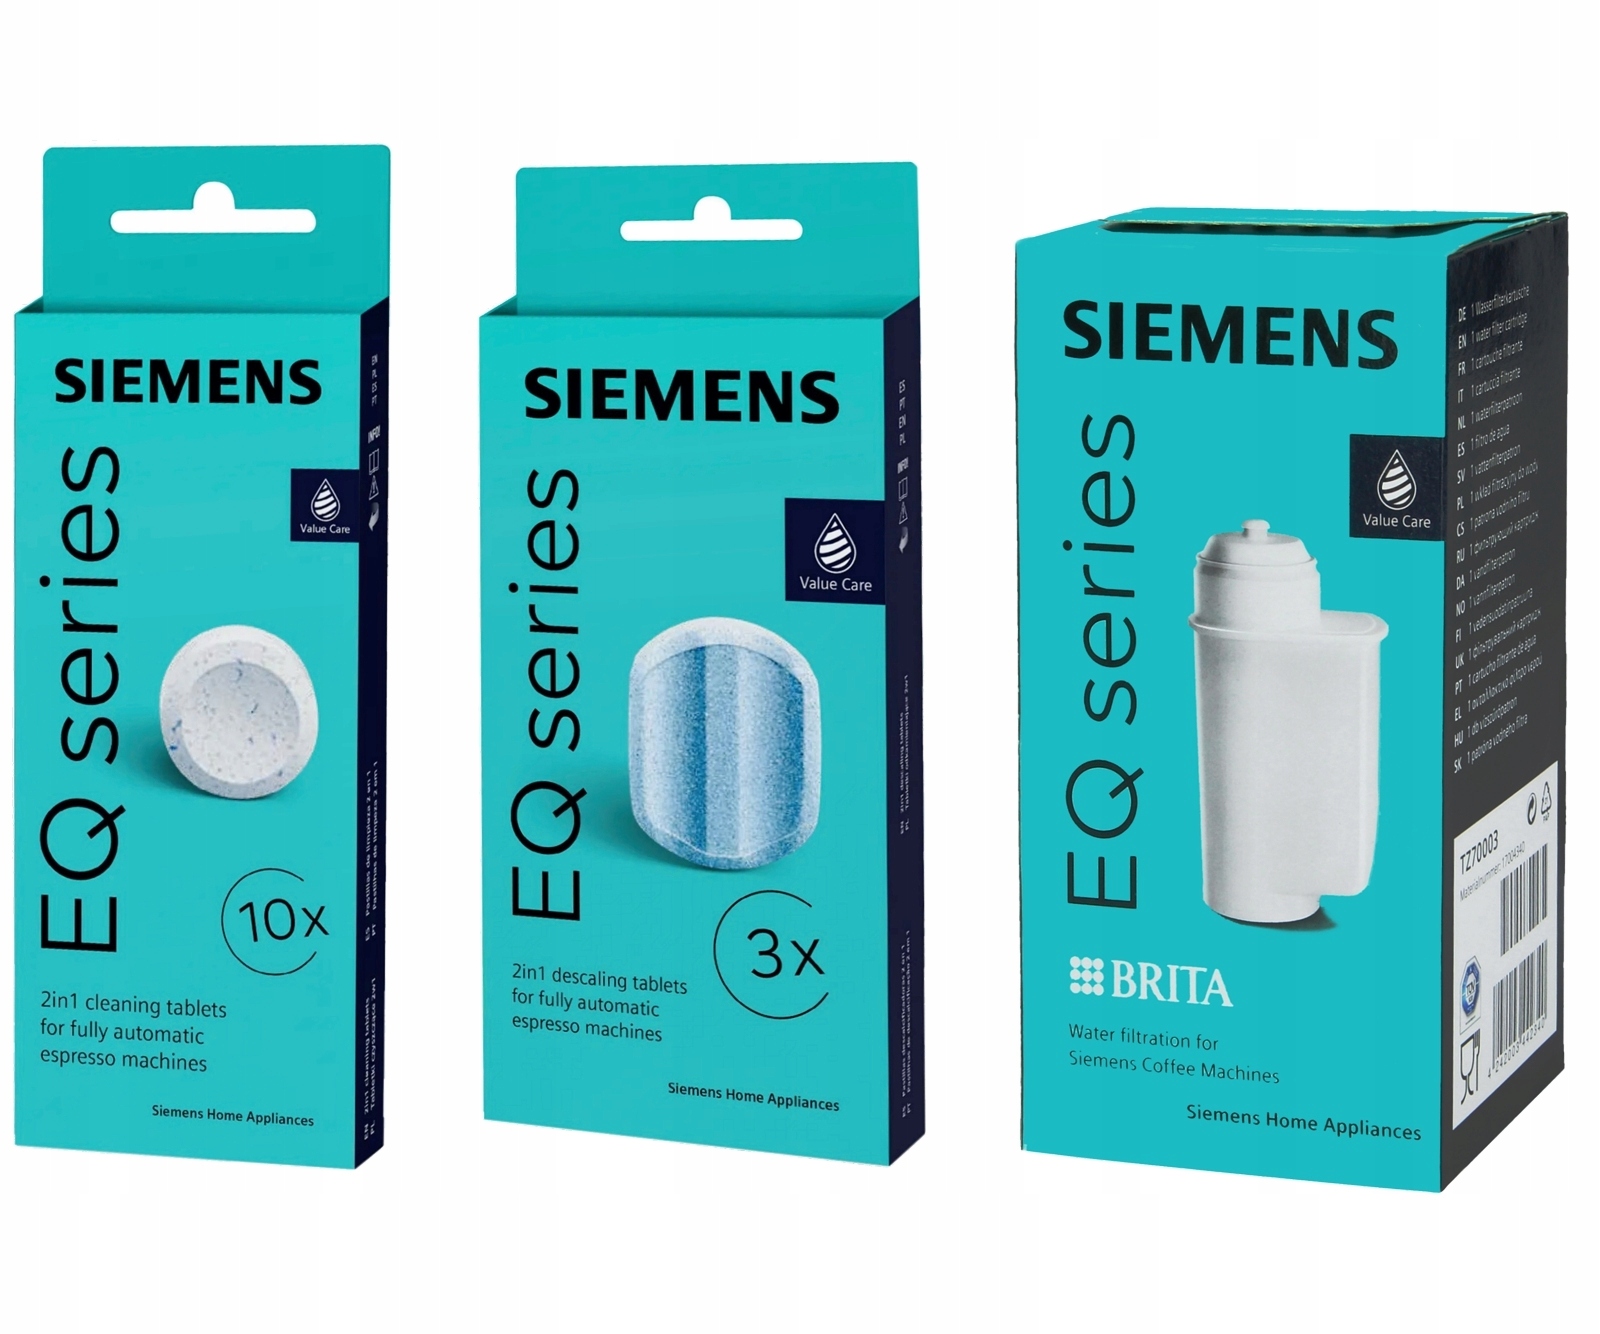 3x filtr wody do ekspresu Siemens TZ70003 - oryginalne - Sklep, Opinie,  Cena w